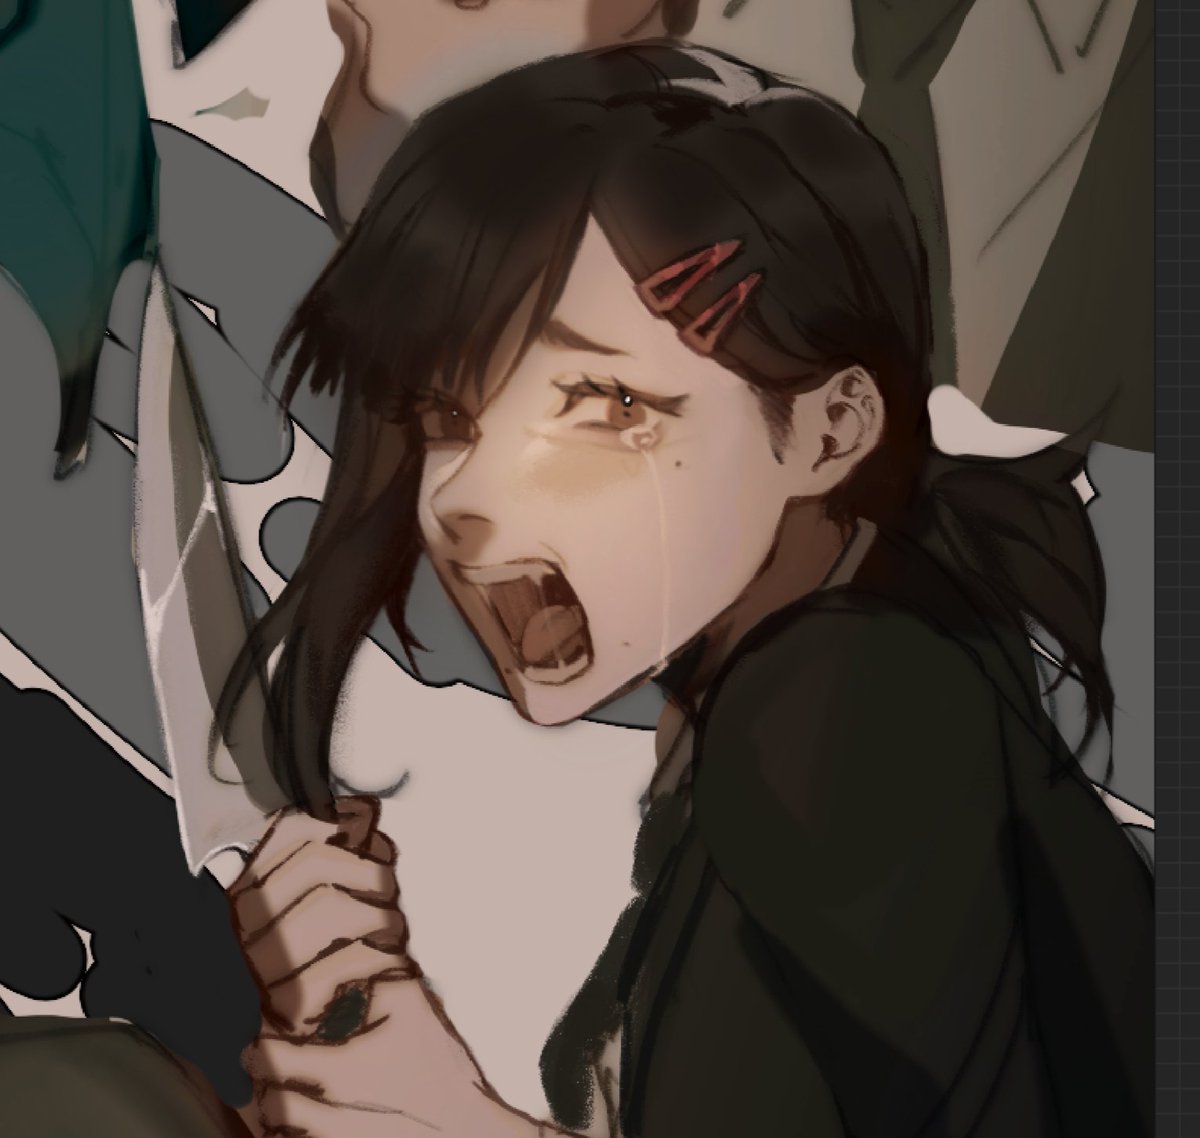 higashiyama kobeni 1girl knife crying hair ornament open mouth hairclip holding knife  illustration images